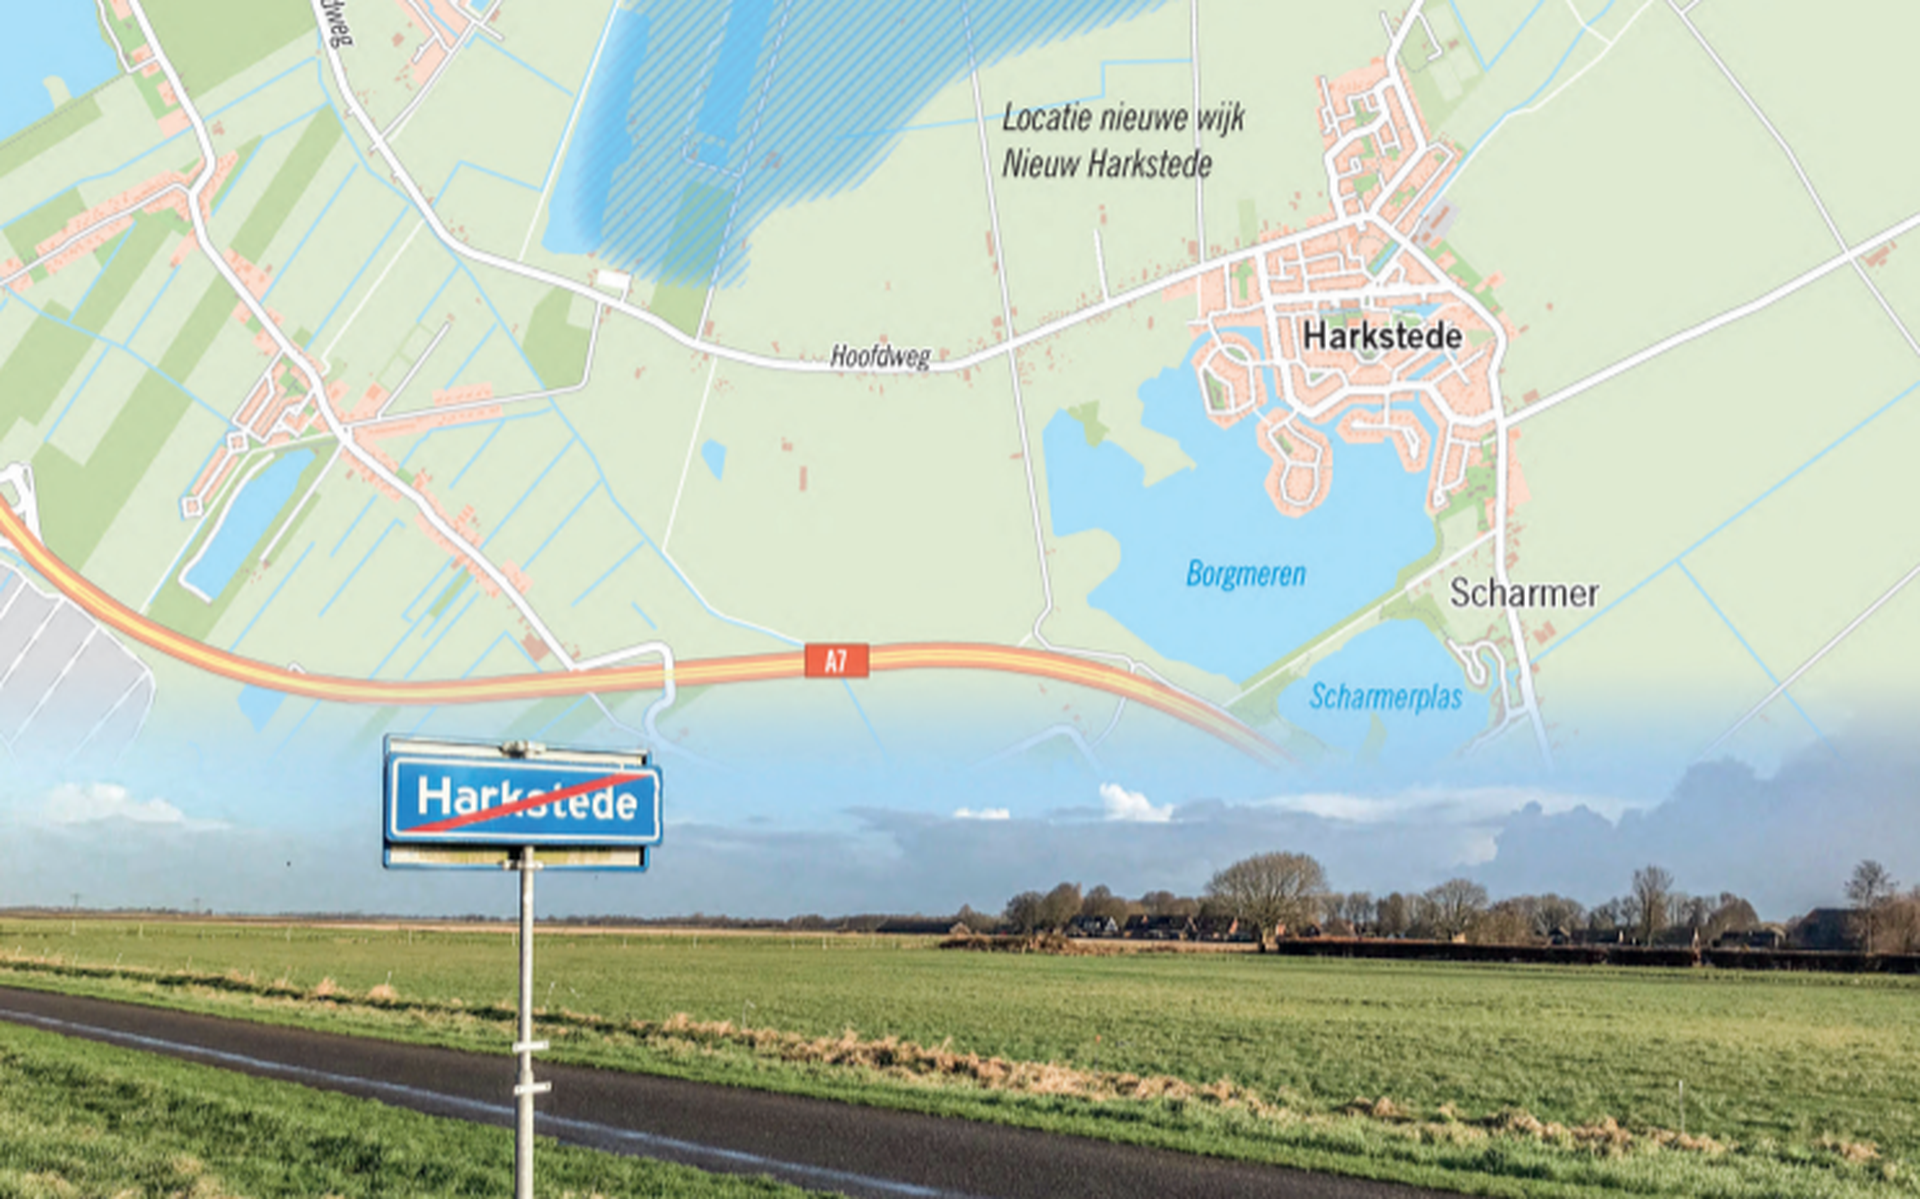 Pracht Namaak zien Groningen rukt met Meerstad op naar het oosten en plakt nieuwe wijk tegen  Harkstede aan. Grens tussen gemeenten Groningen en Midden-Groningen loopt  dan door het dorp - Dagblad van het Noorden